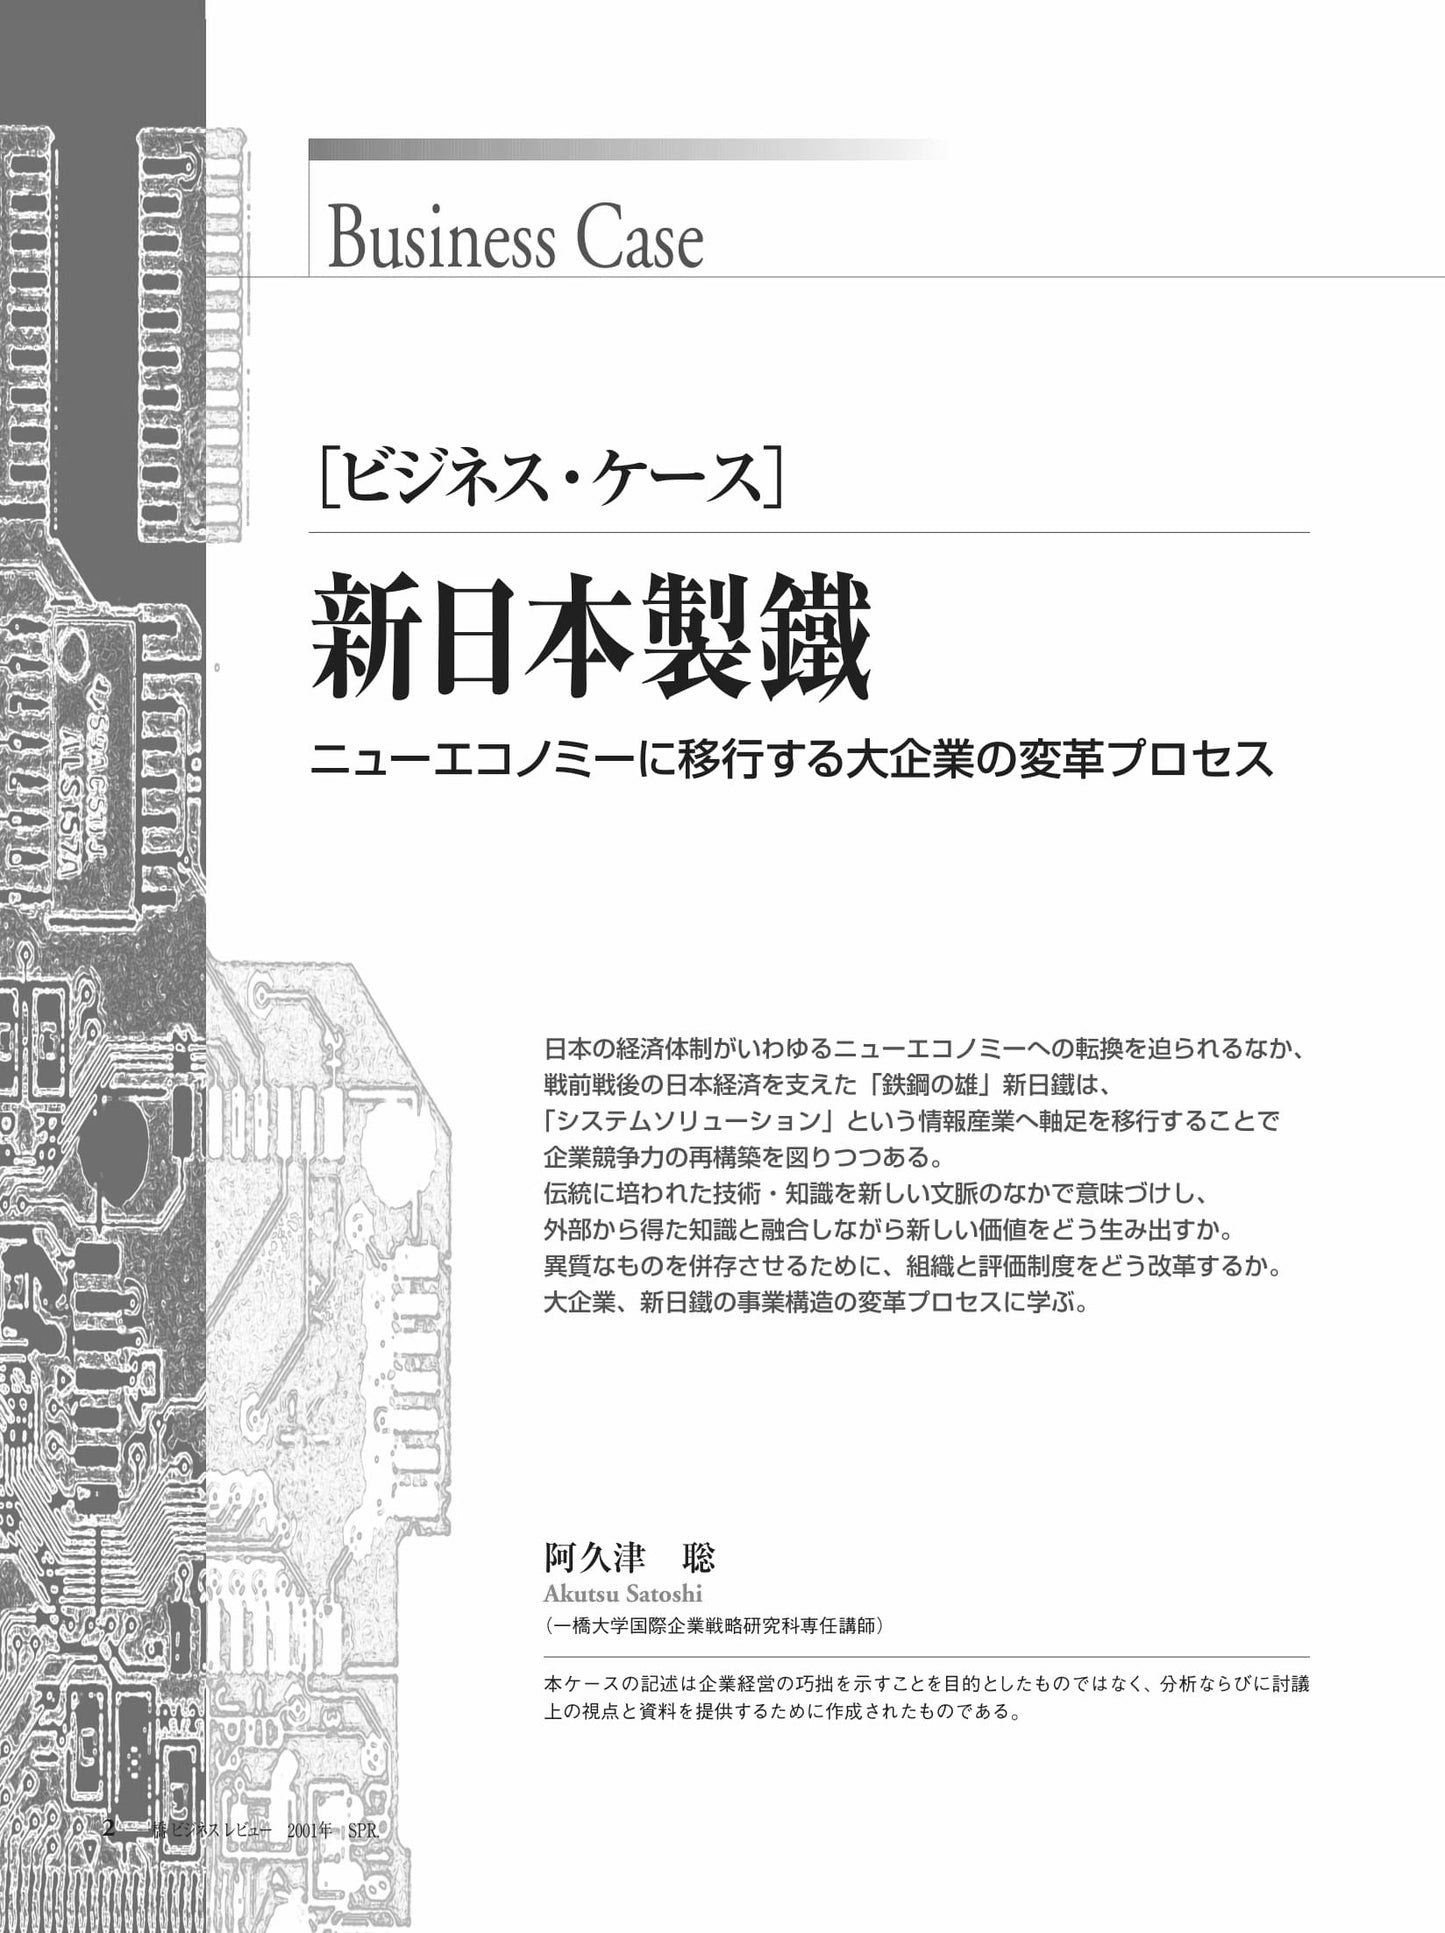 新日本製鐵 : ニューエコノミーに移行する大企業の変革プロセス